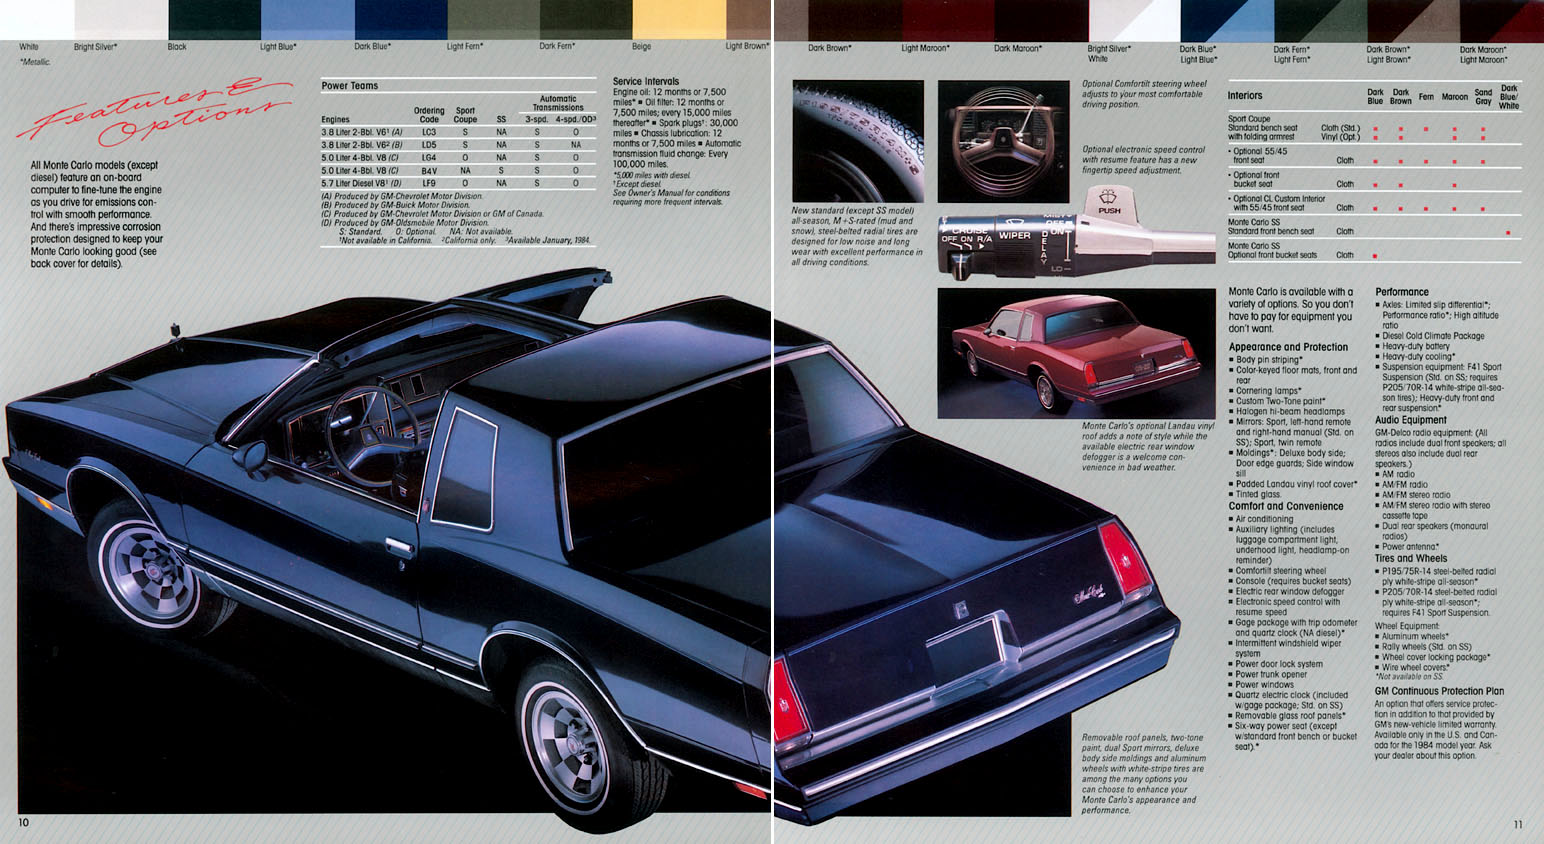 1984 Monte Carlo OEM Brochure (6)